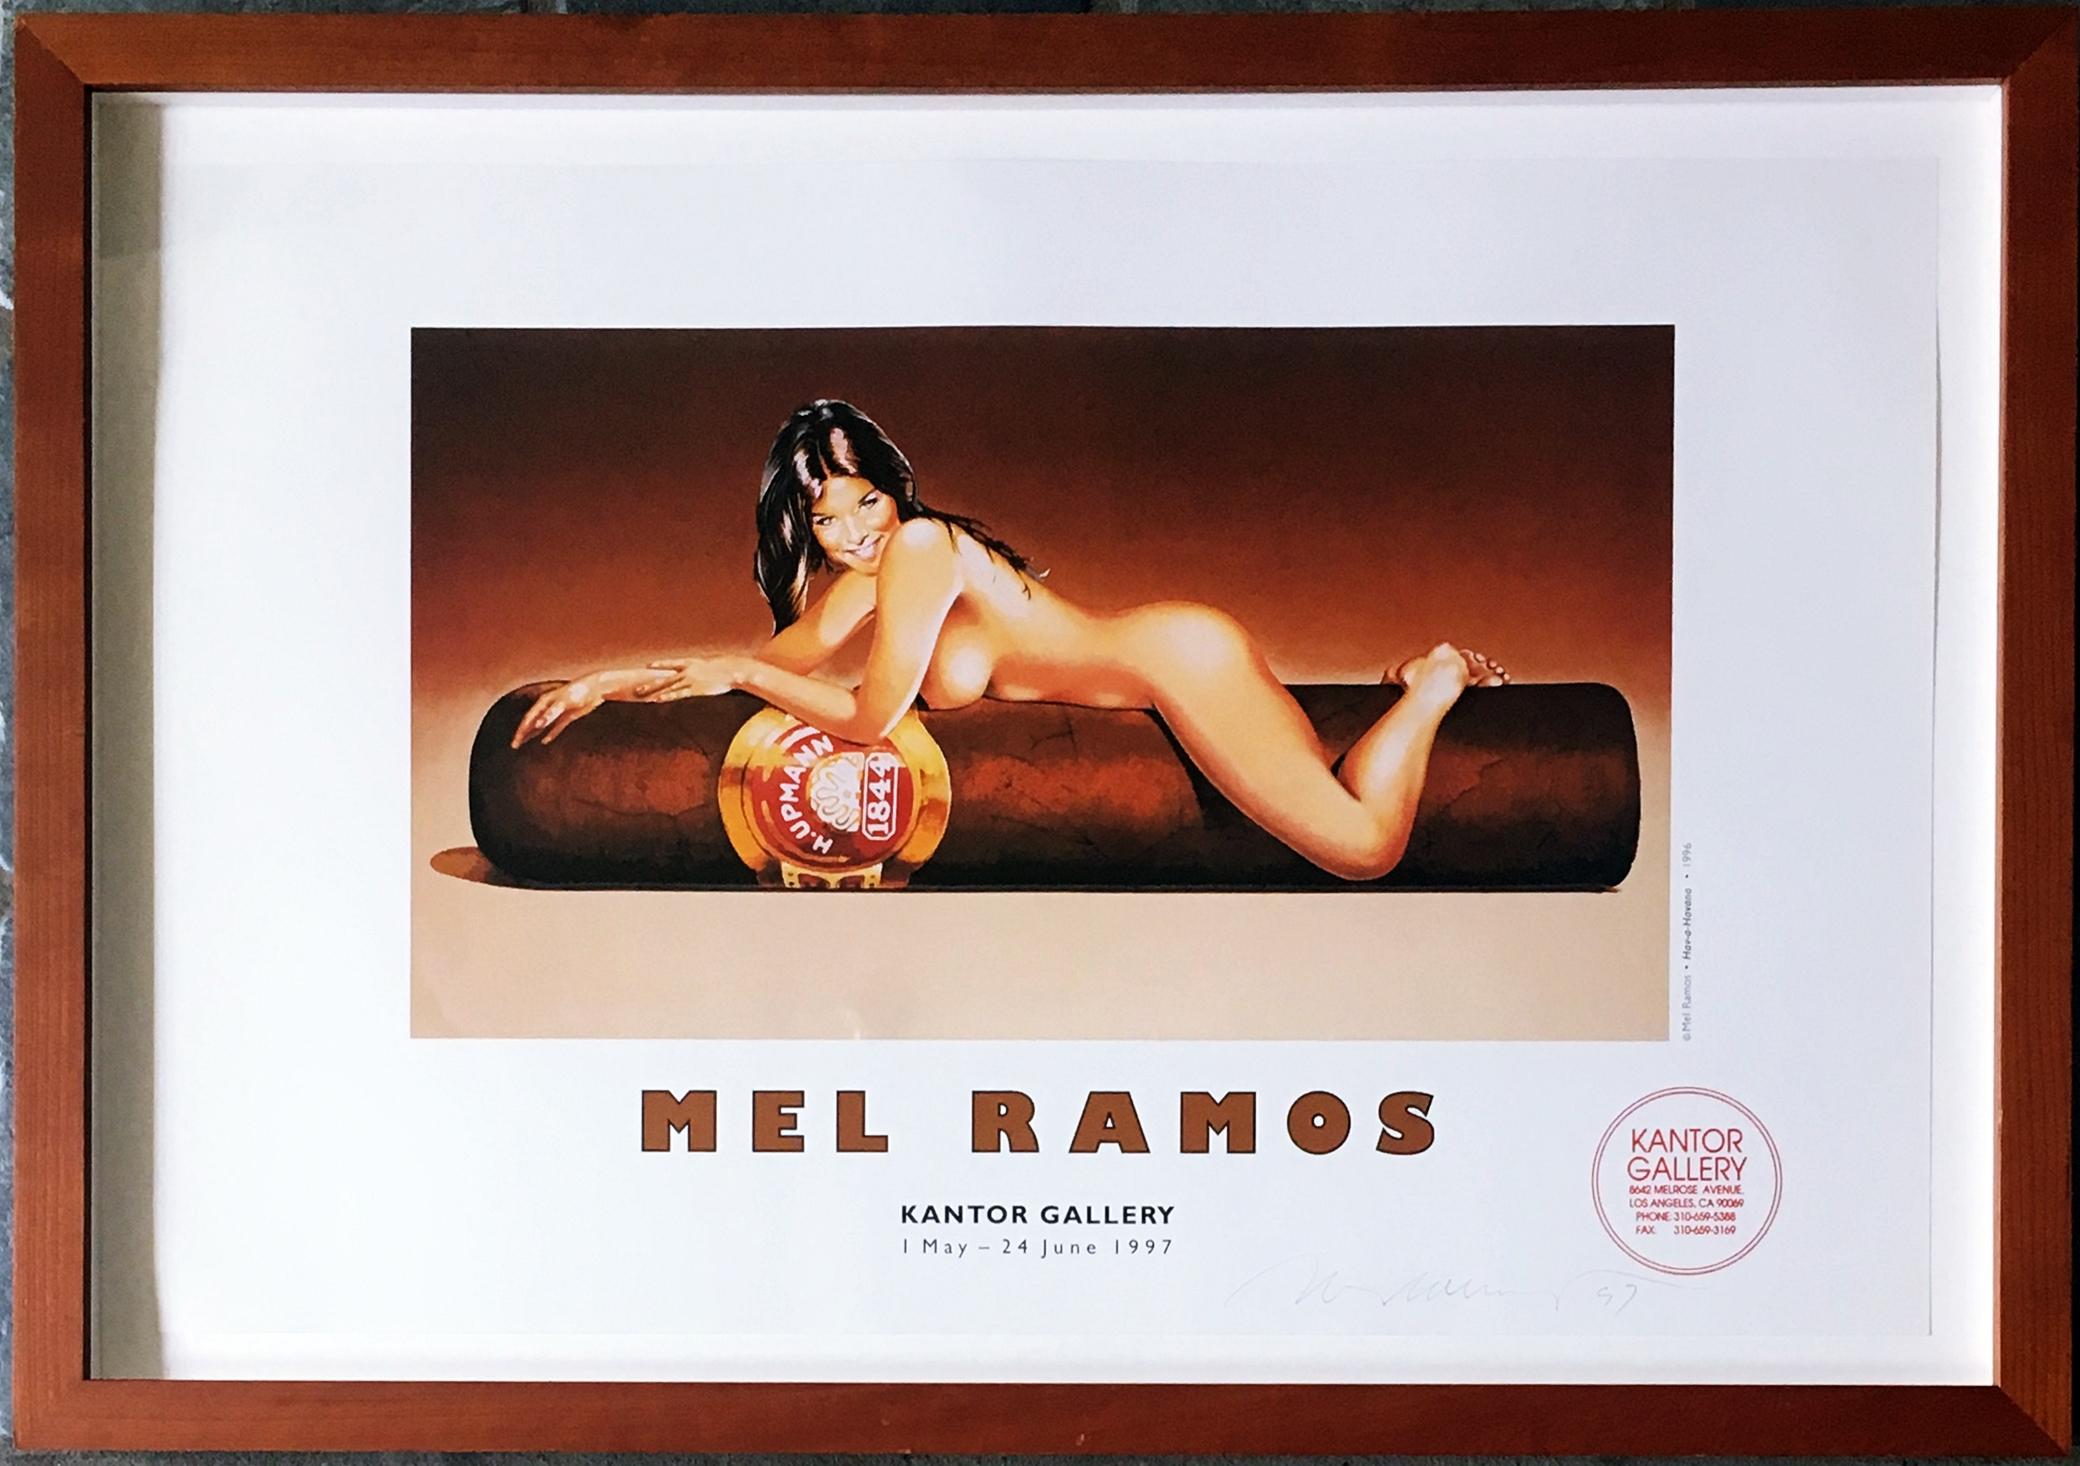 Mel Ramos in der Kantor Gallery (handsigniert), 1997
Limitierte Auflage einer Offsetlithografie (handsigniert von Mel Ramos)
Mit Bleistift signiert und datiert auf der unteren Vorderseite
Inklusive Rahmen: gerahmt in dunklem Holzrahmen mit